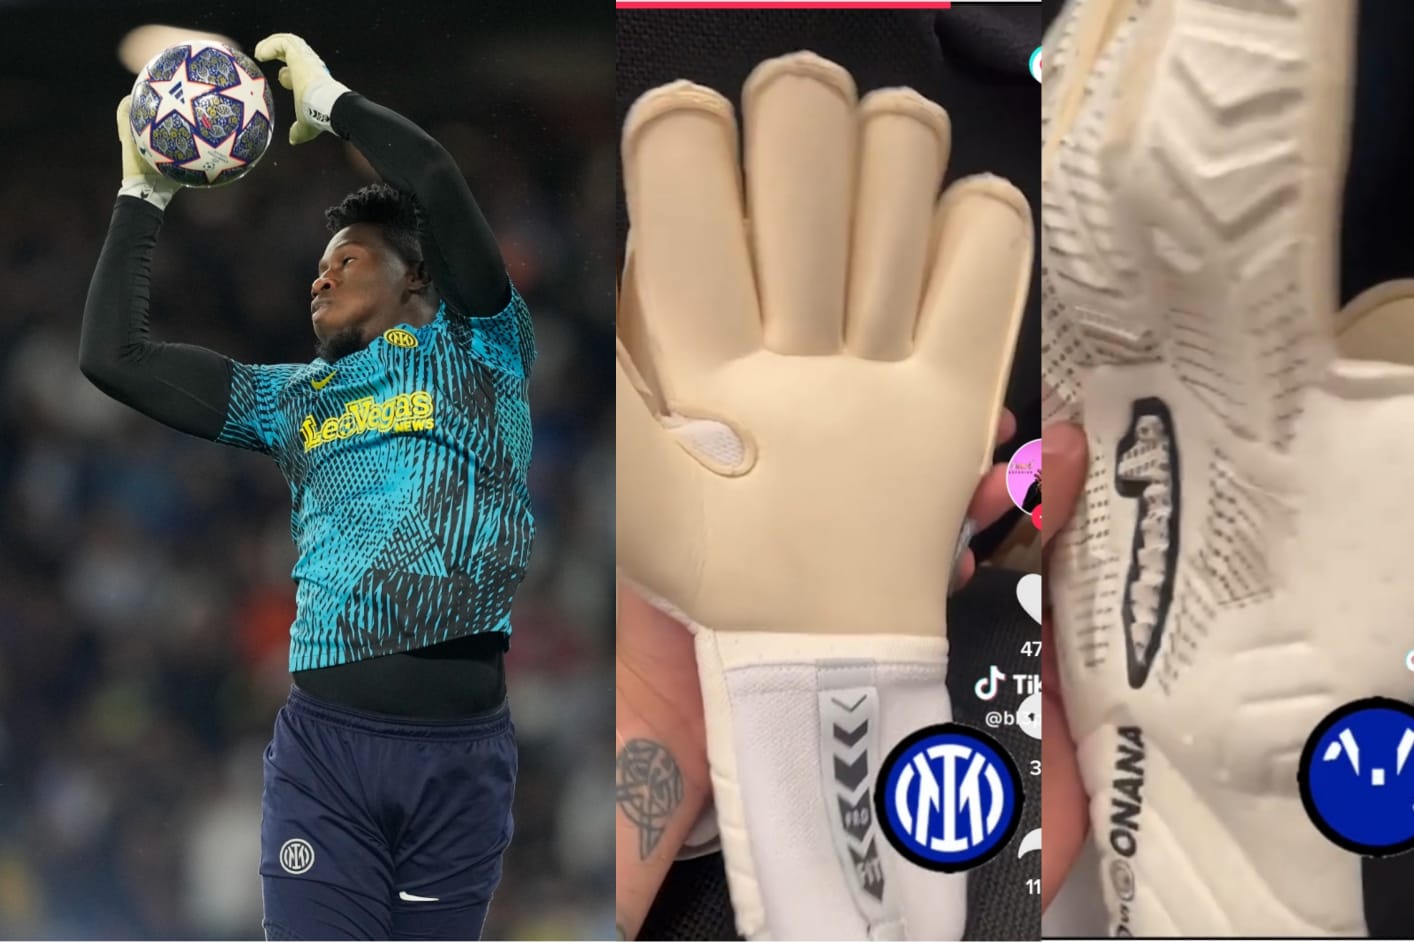 Pólvora Desventaja consultor El portero que 'representa' a México en la final de la Champions League;  sus guantes son de una marca de León